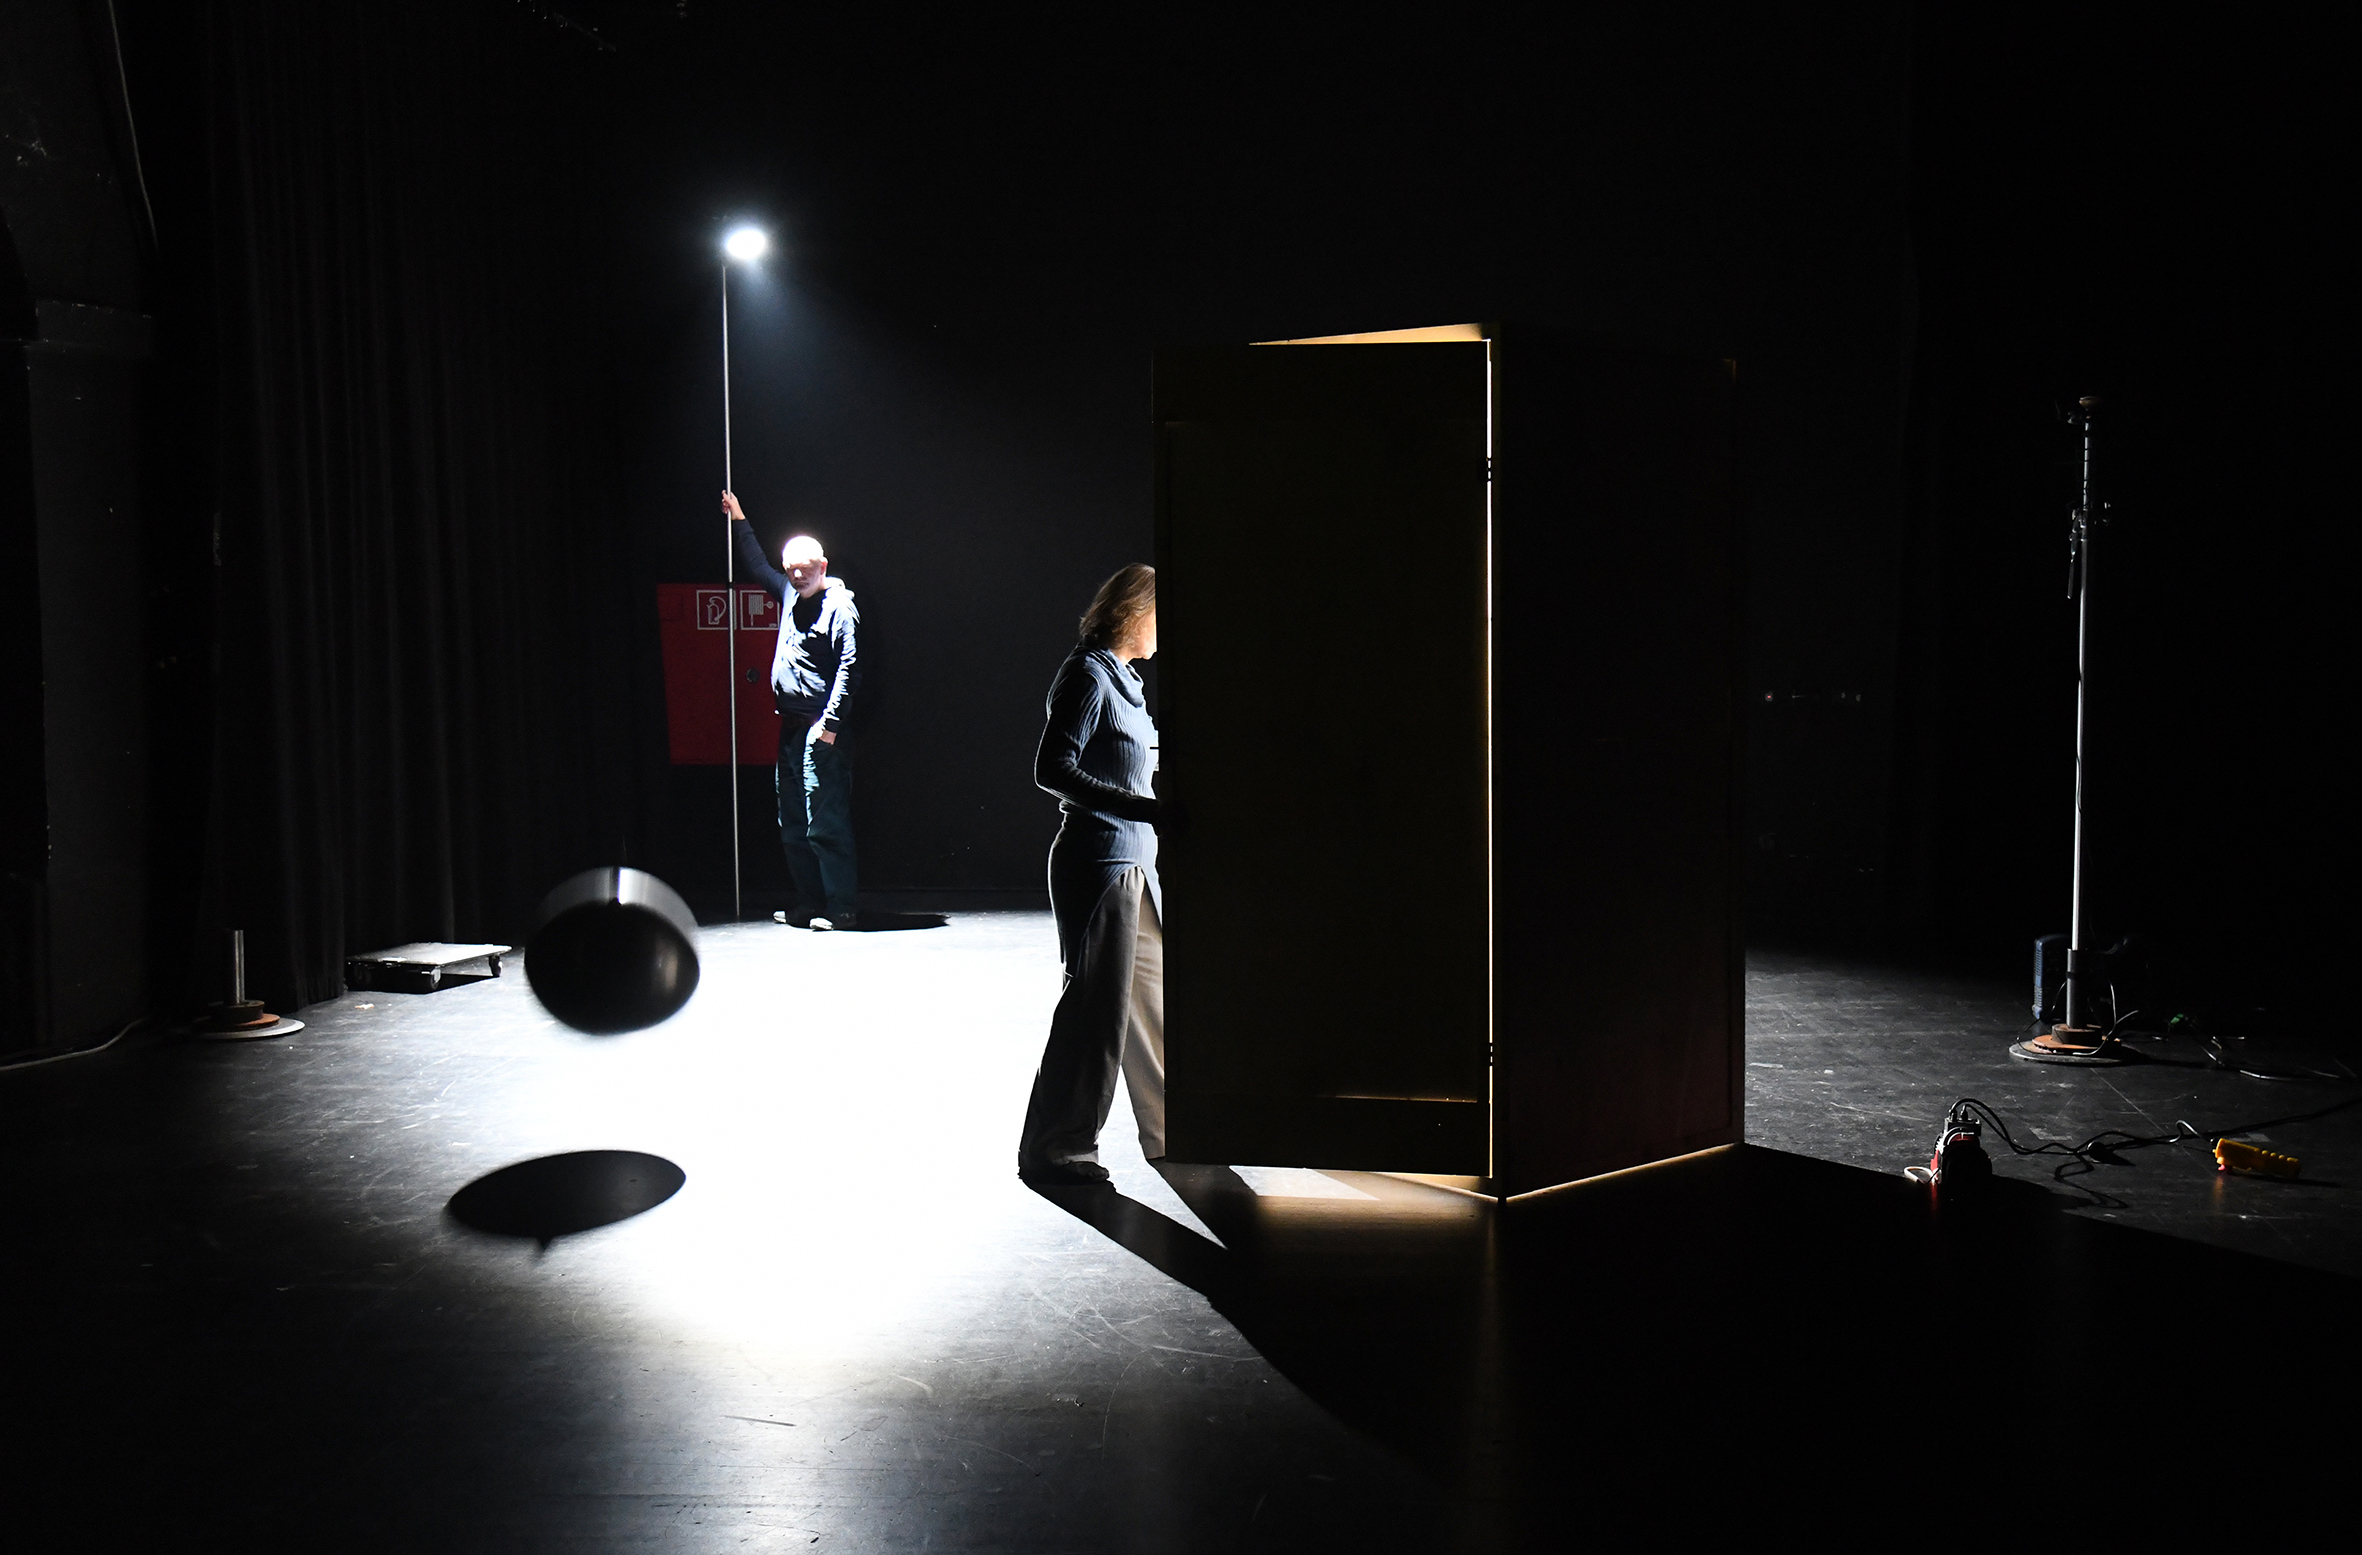 Zwei Personen im dunklen Bühnenraum, eine geht gerade in eine von innen beleuchtete Holzkiste. Die hintere Person hält eine Lampe, deren runder Lichtkegel auf dem Bühnenboden strahlt.